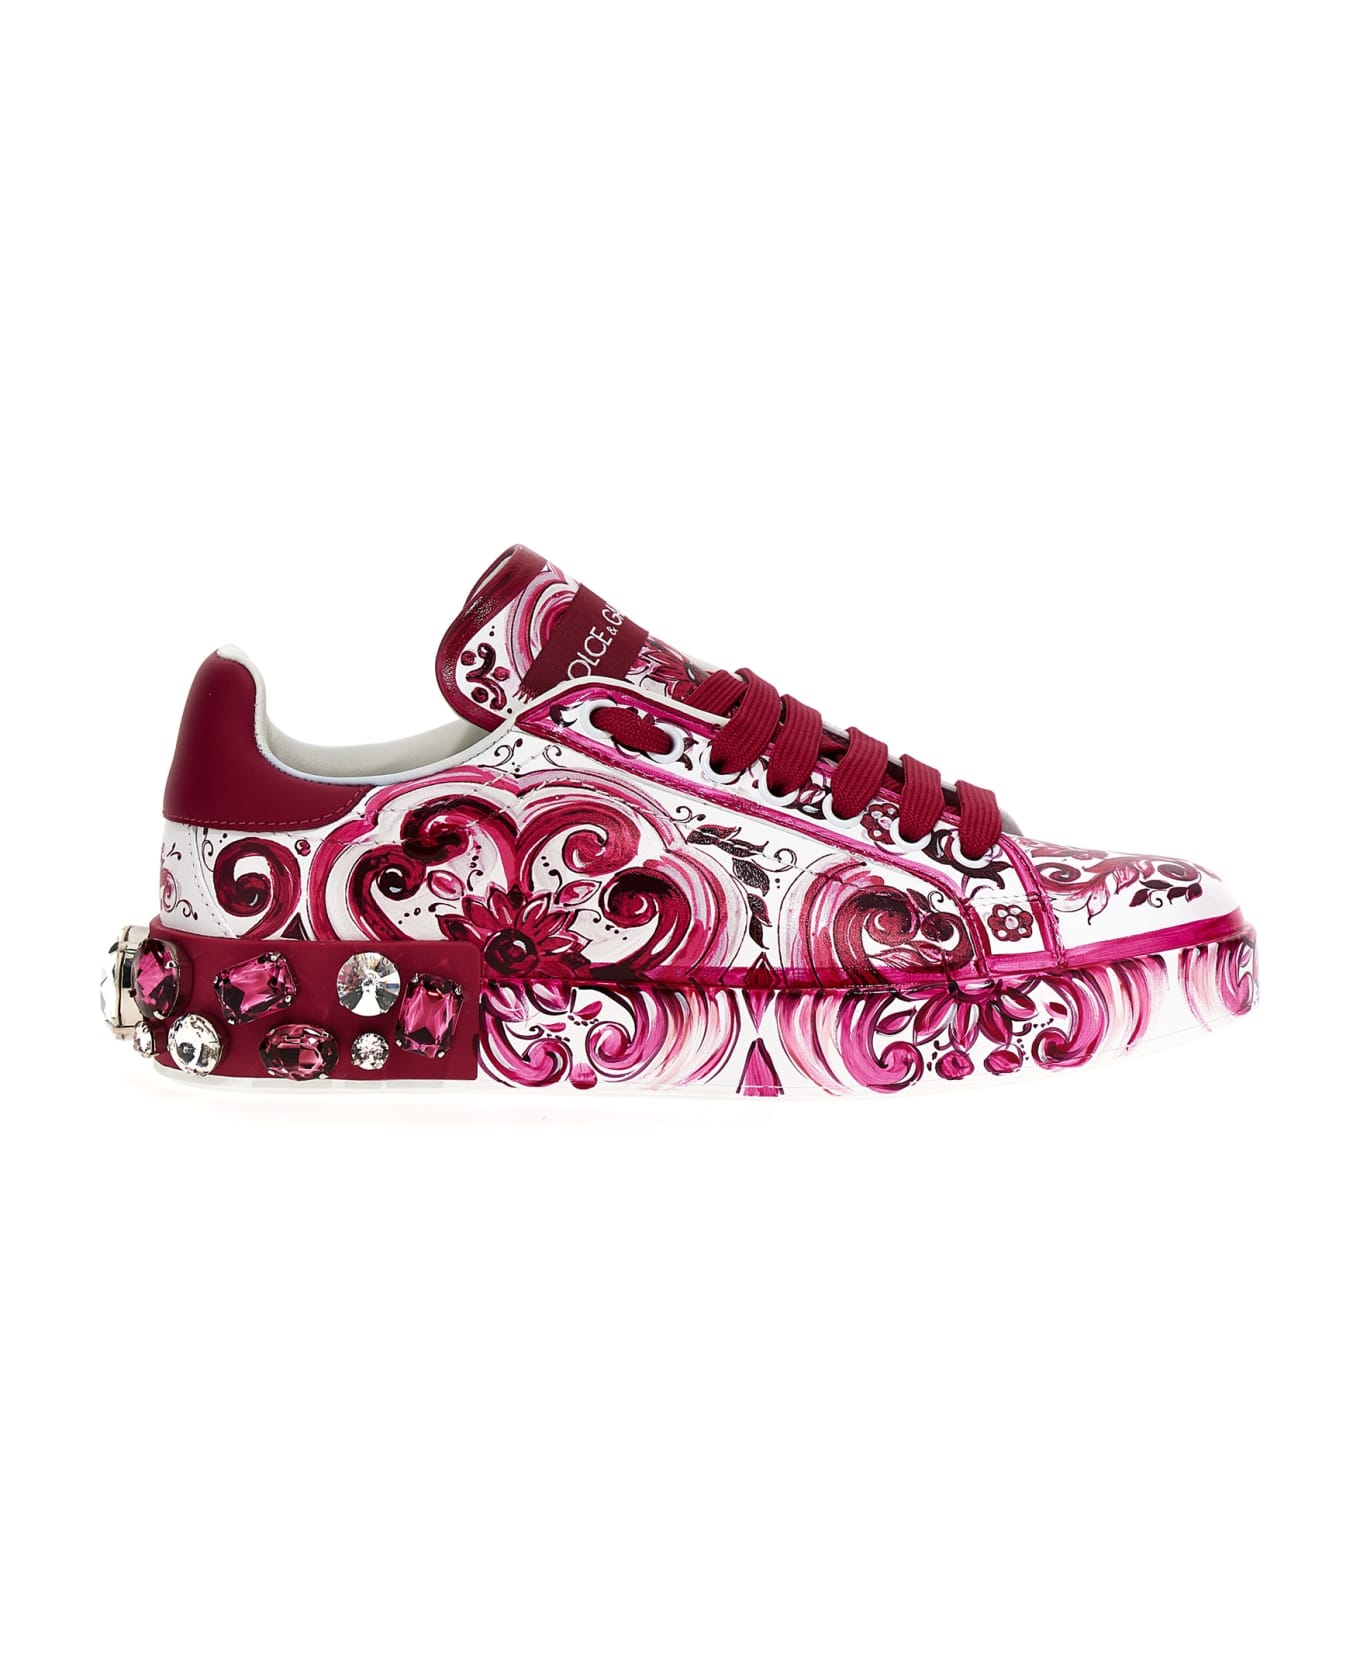 Dolce & Gabbana Portofino Leather Sneakers - Fuchsia